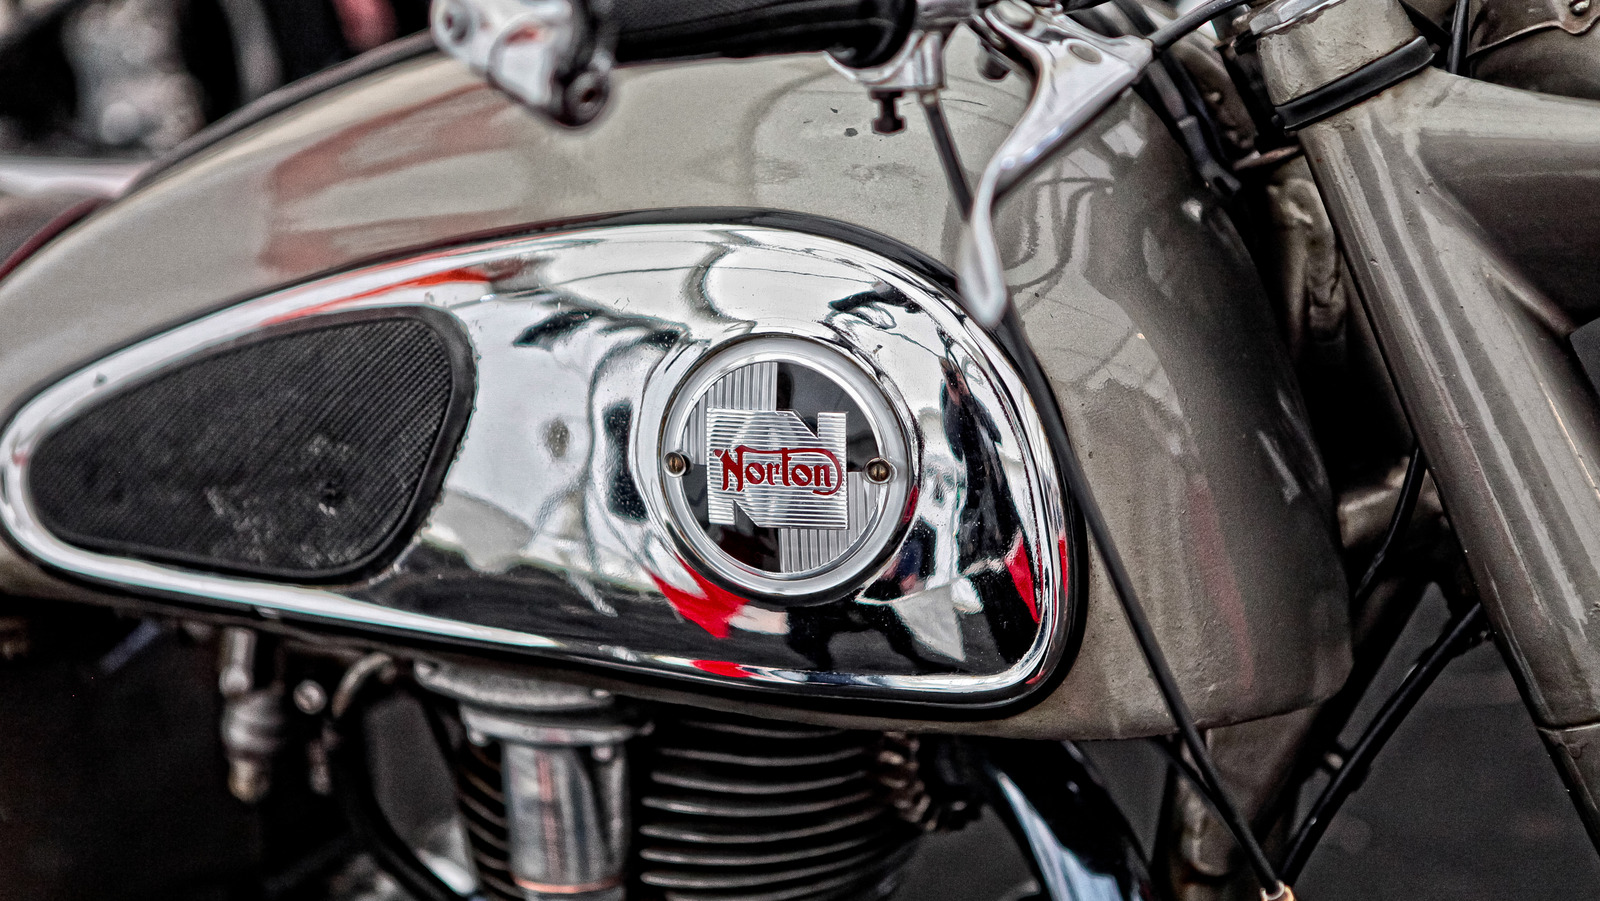 ¿Dónde se fabrican las motocicletas Norton y quién es el propietario de la empresa ahora?